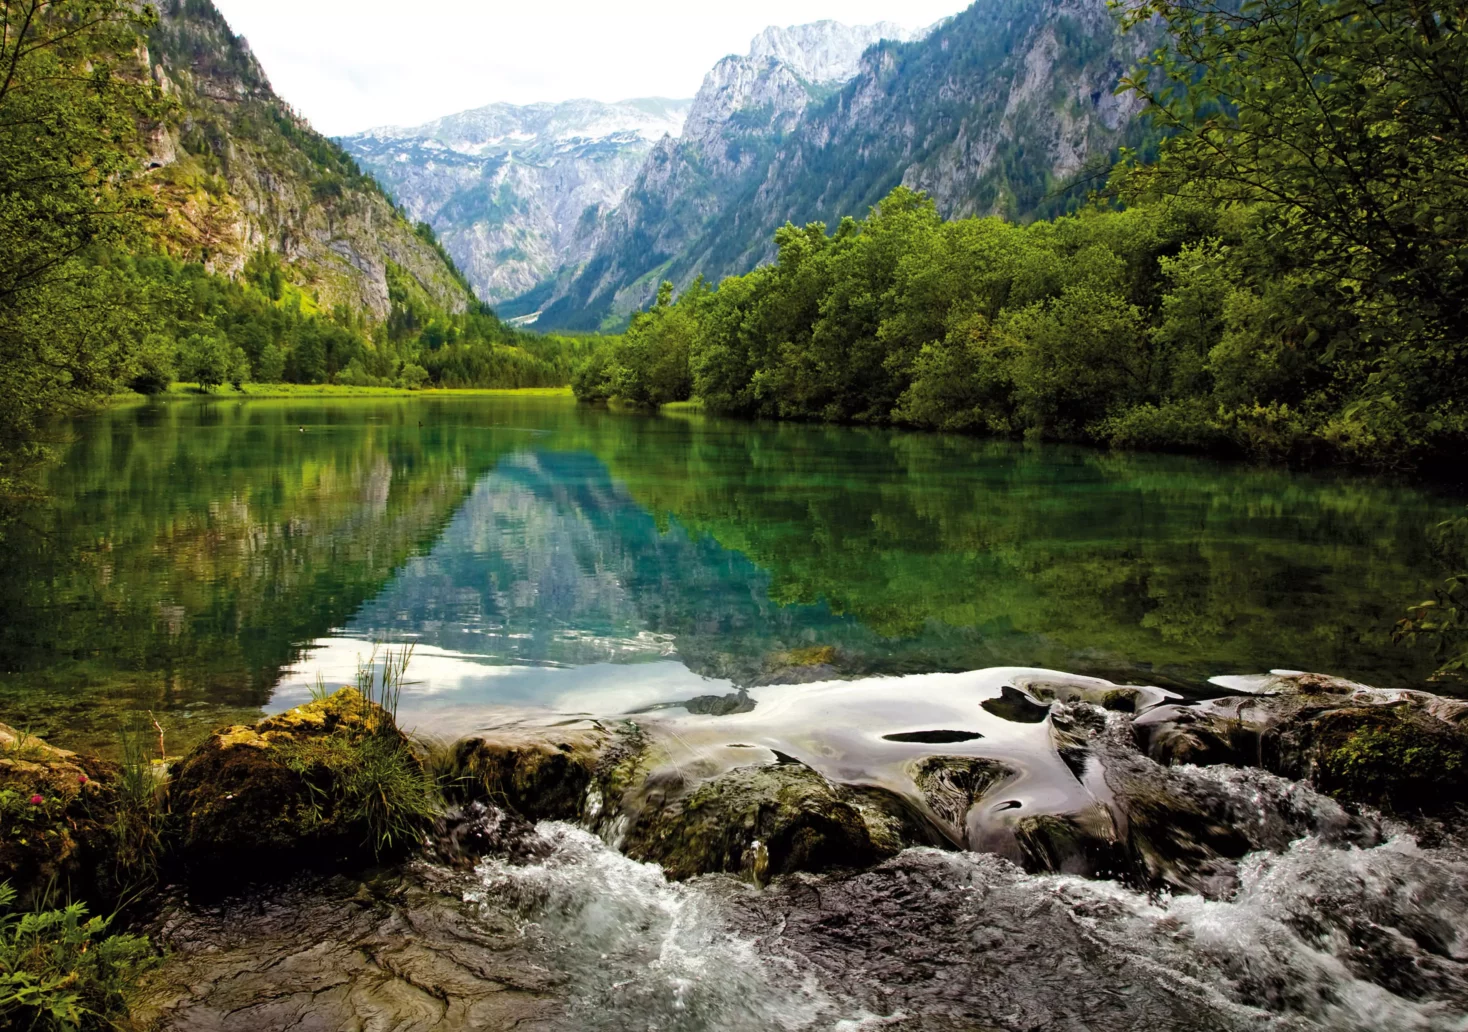 Bild auf 5min.at zeigt einen See und im Hintergrund Gebirge.